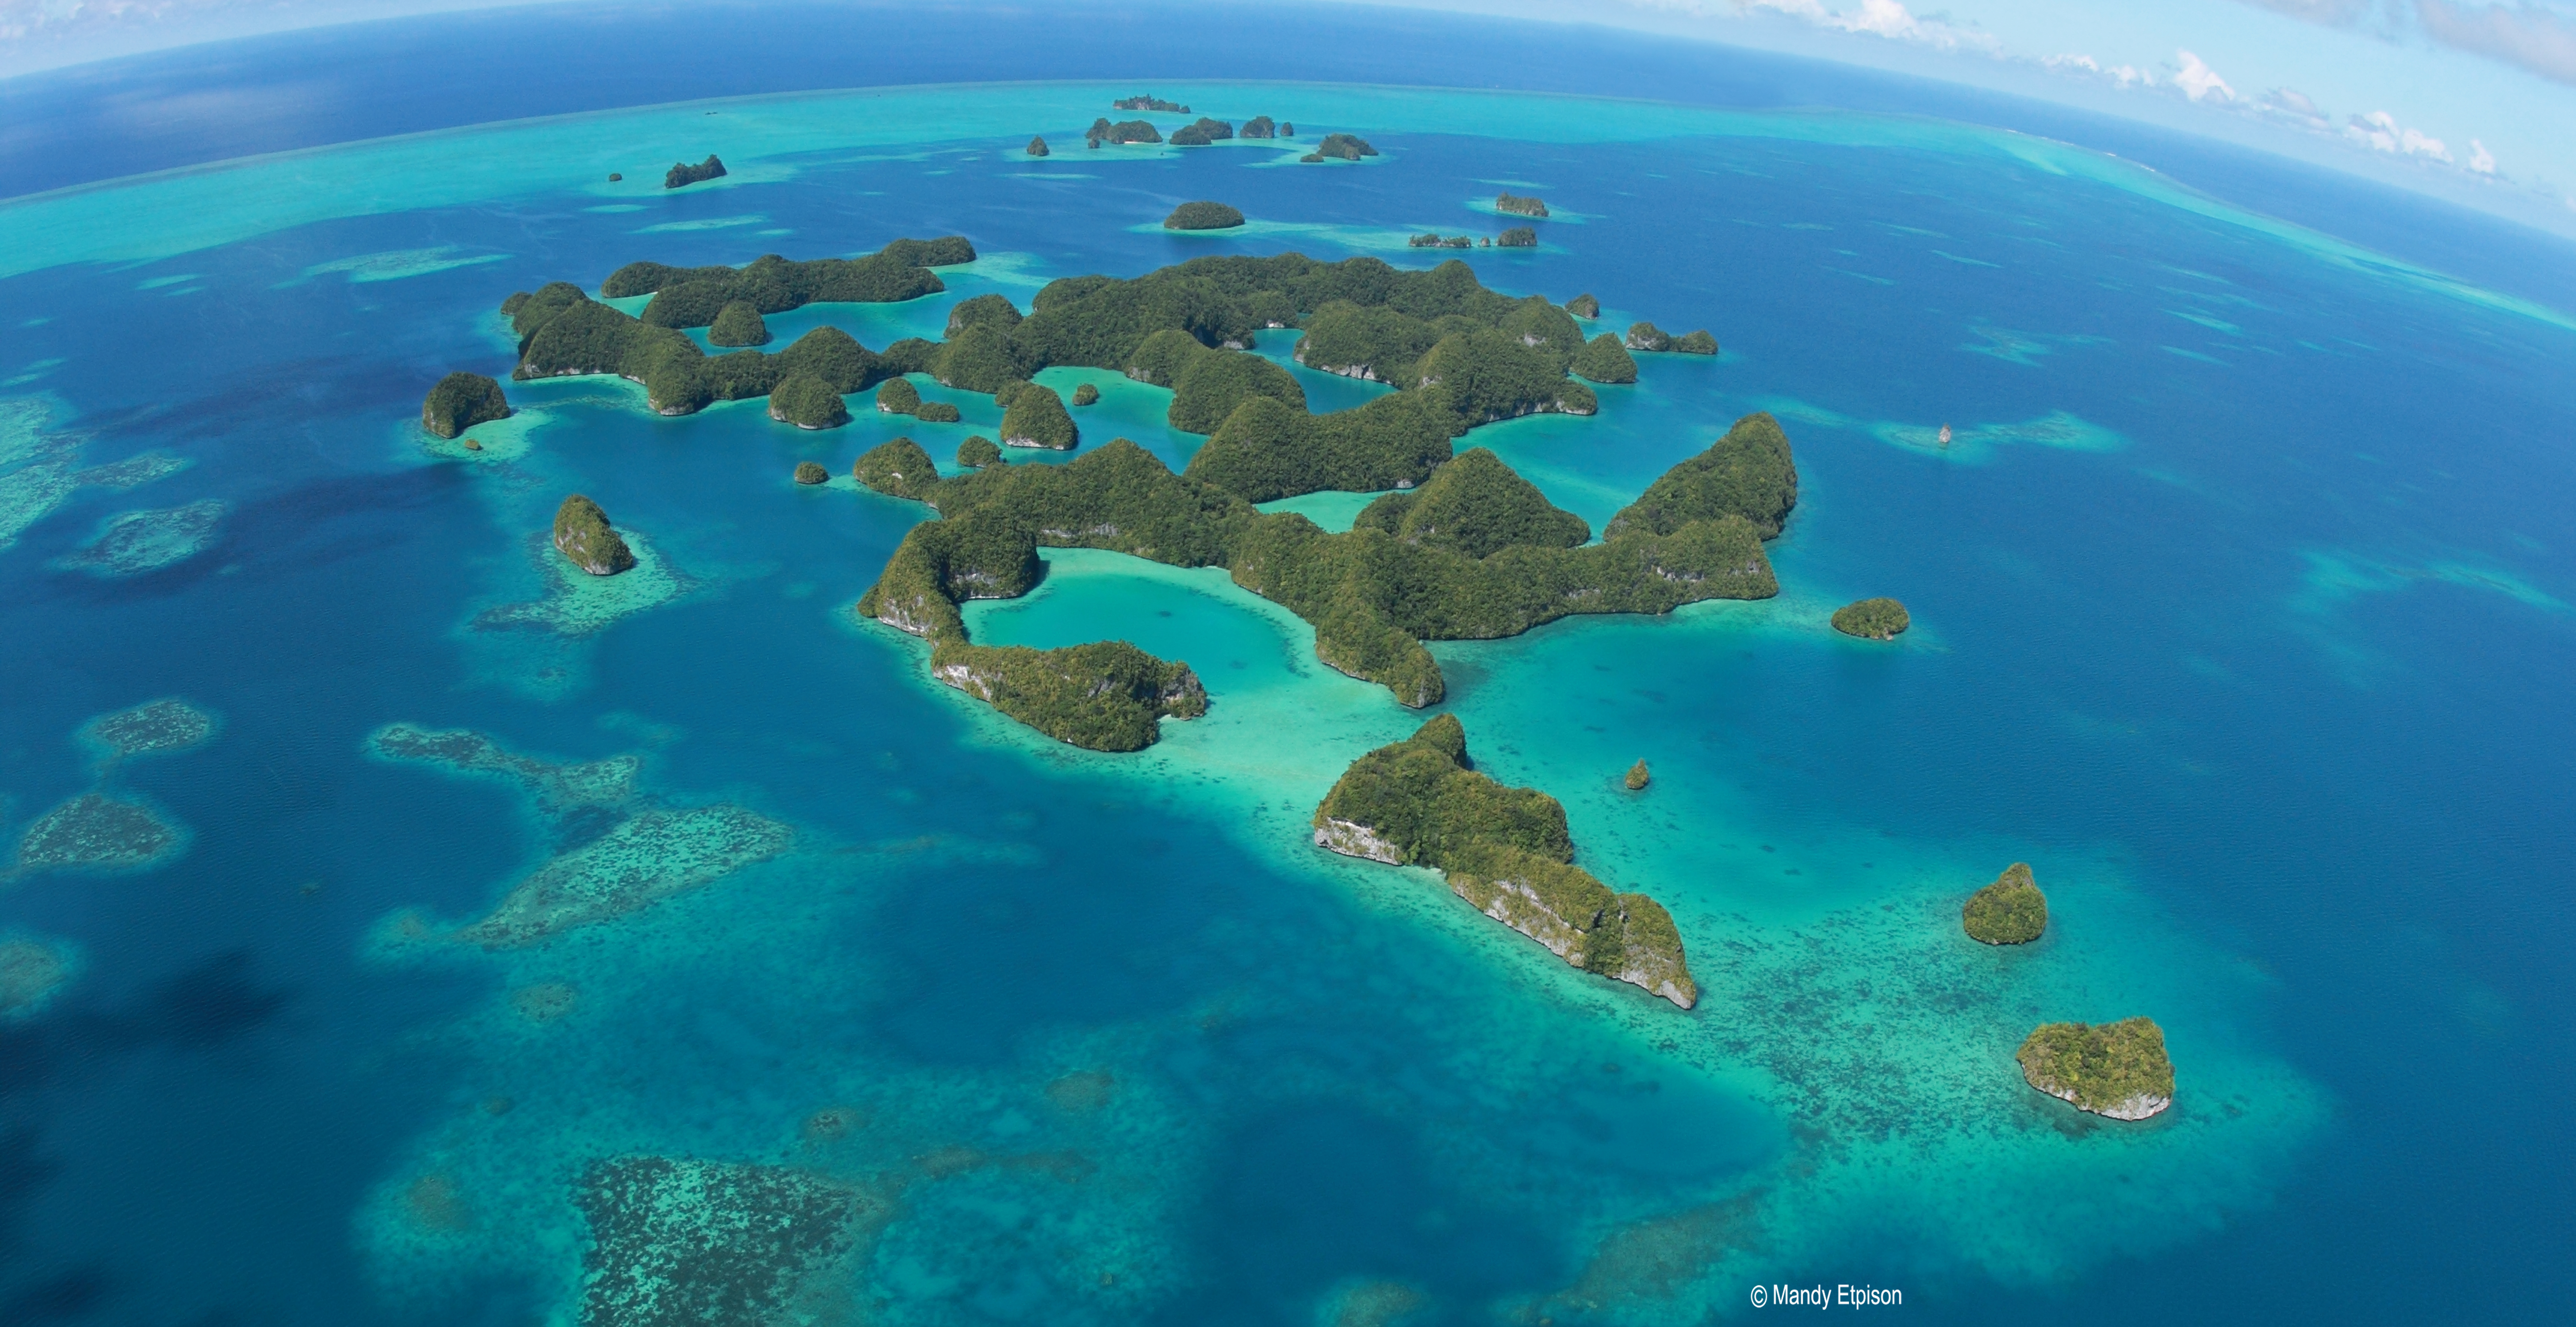 Какие острова расположены в океании